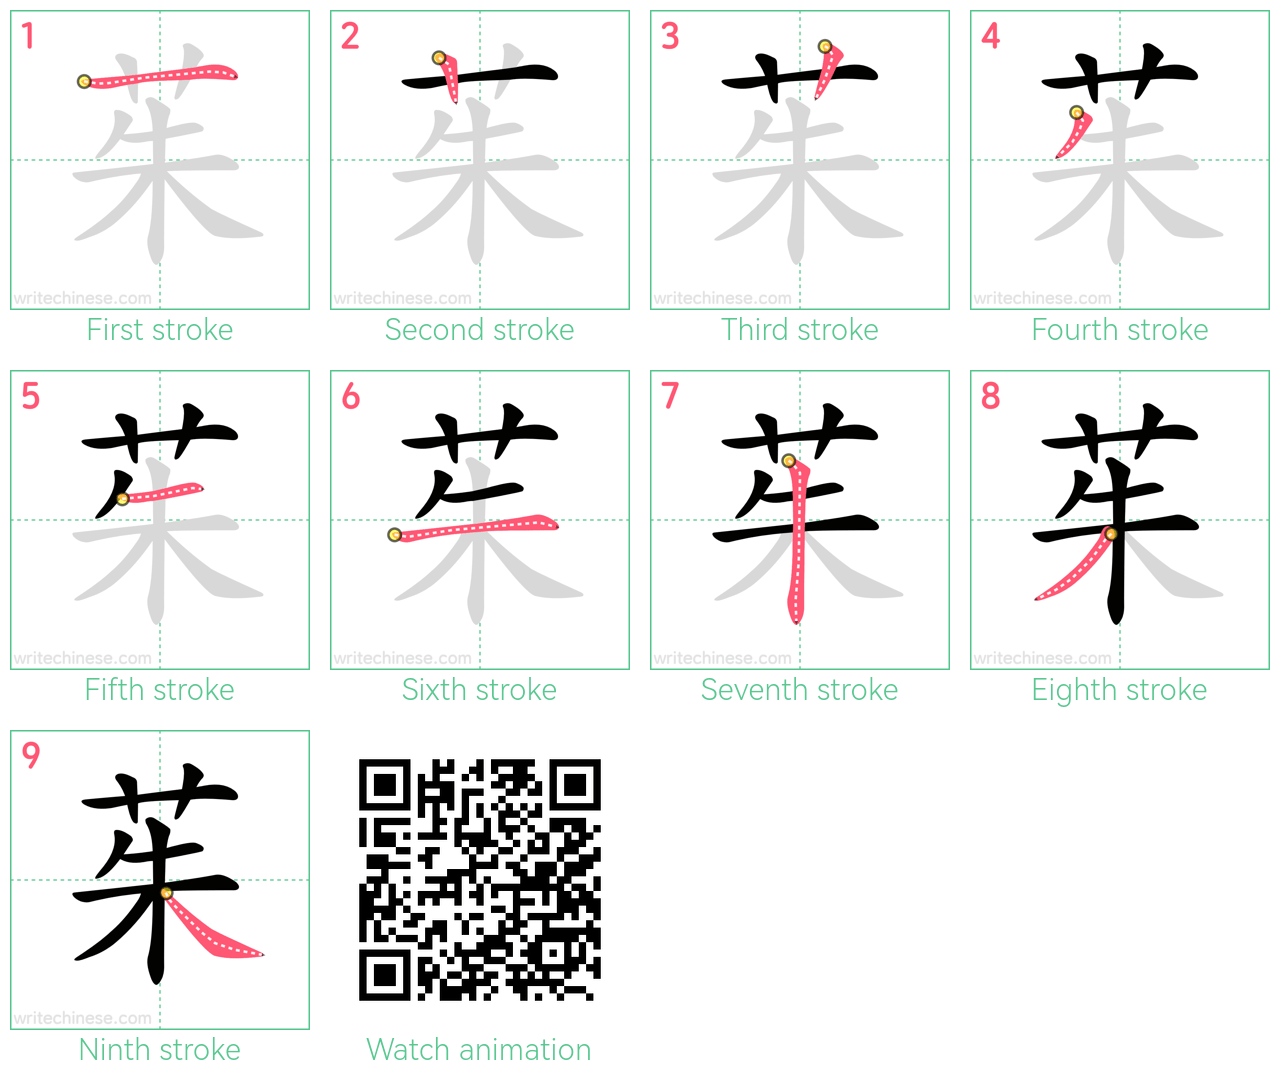 茱 step-by-step stroke order diagrams